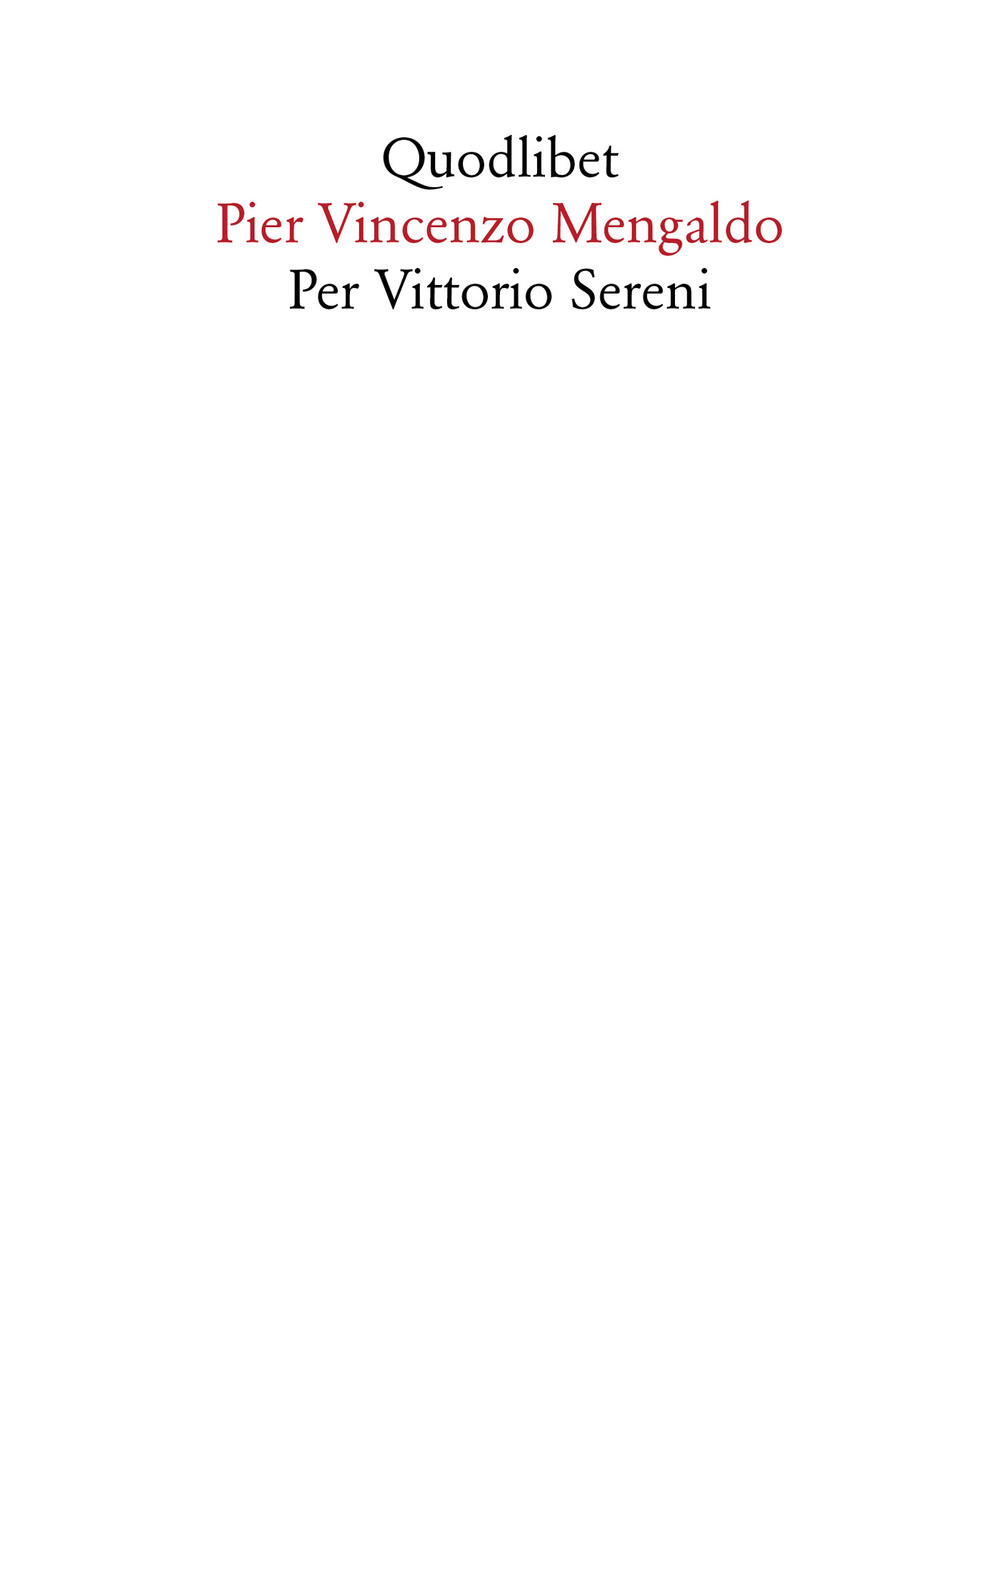 PER VITTORIO SERENI - 9788822906953